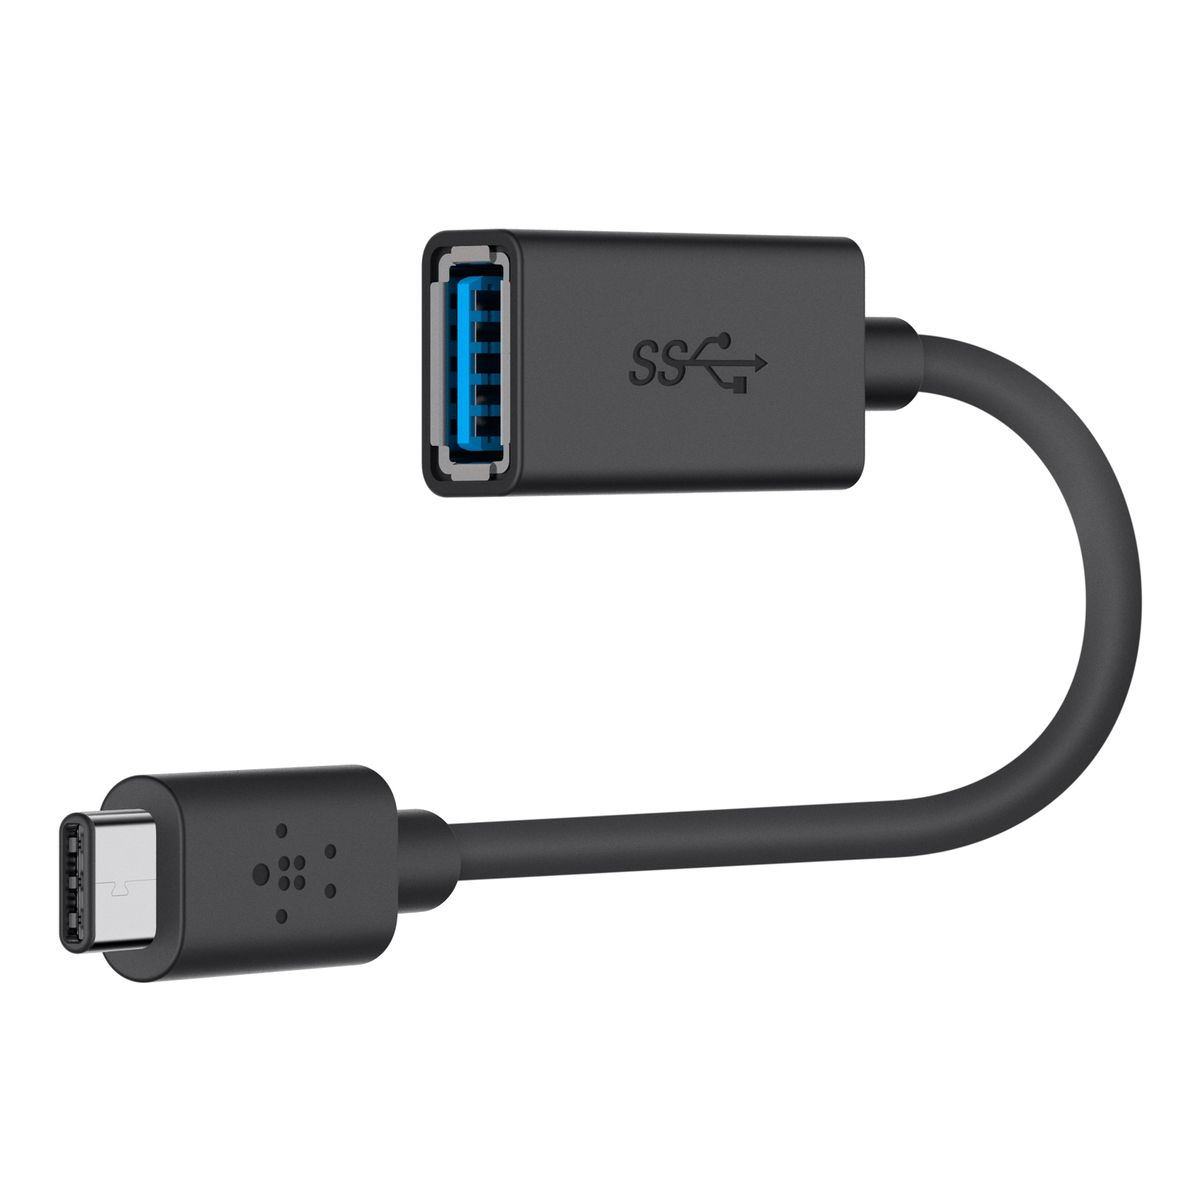 Adaptateur USB-C vers USB-A 5Gbit/s câble renforcé - EZQuest DuraGuard  X40100 - USB - EZQUEST